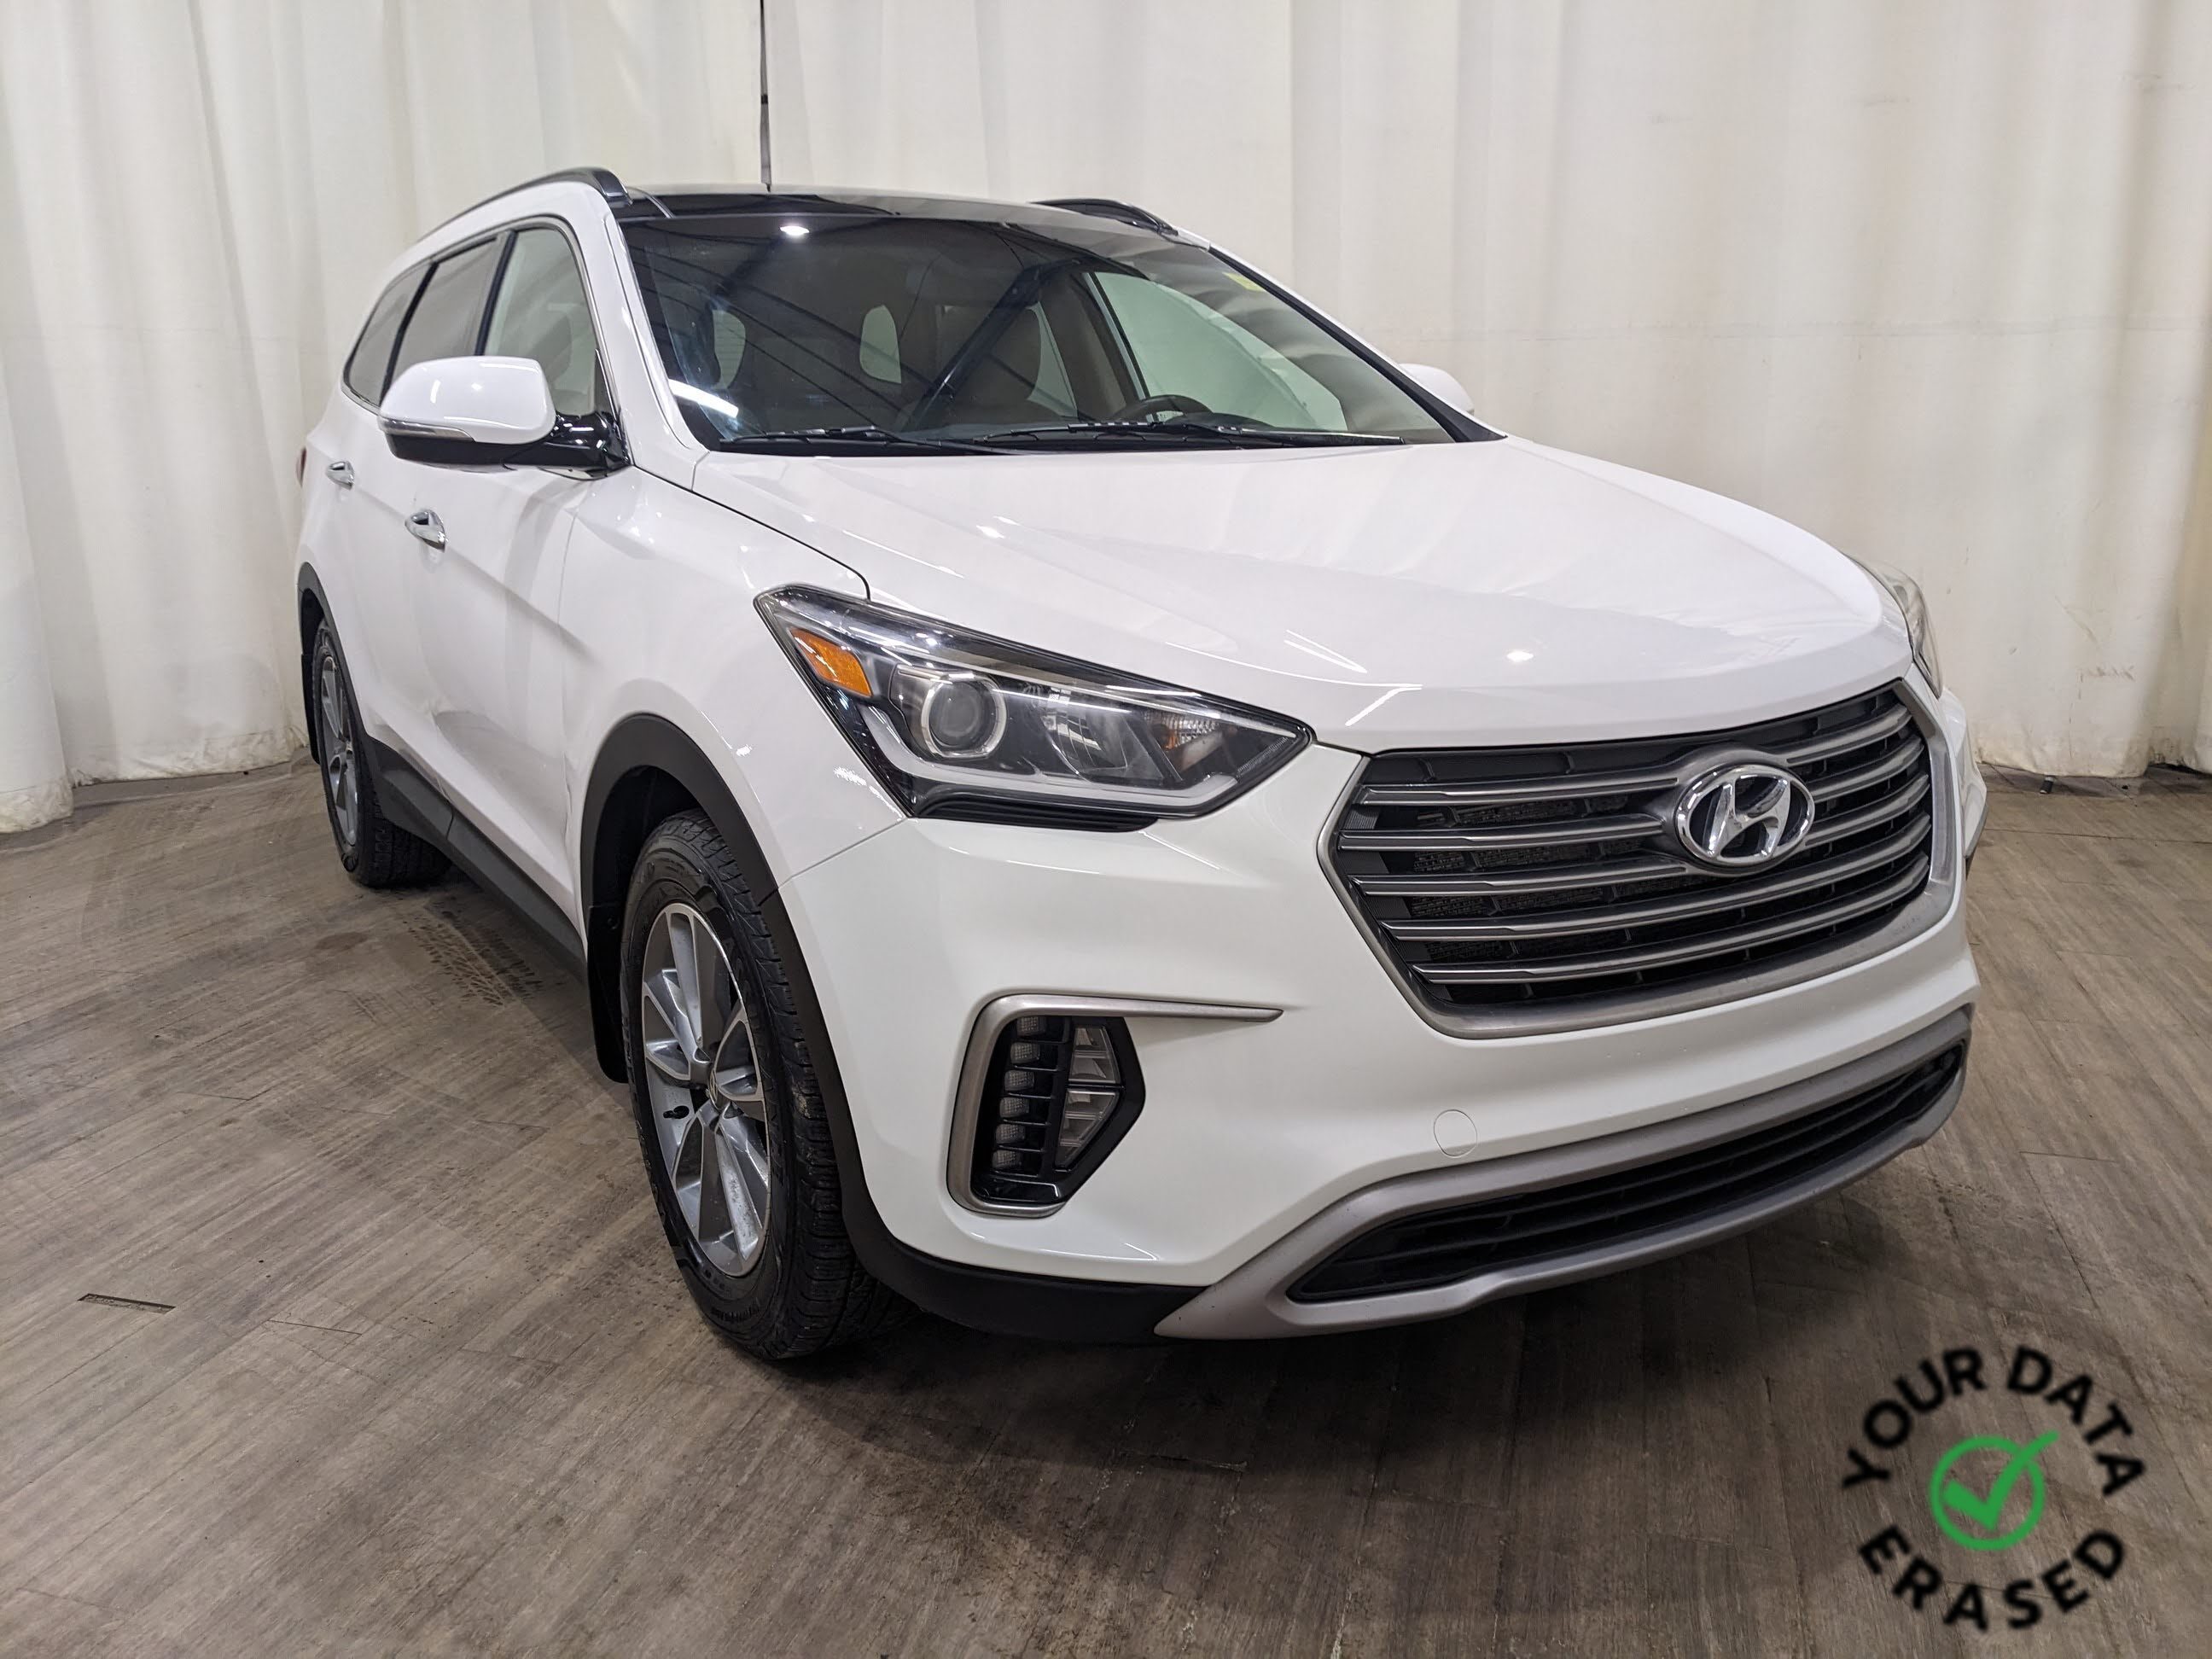 2017 Hyundai Santa Fe XL Luxury AWD | Leather | Bluetooth | Navigation